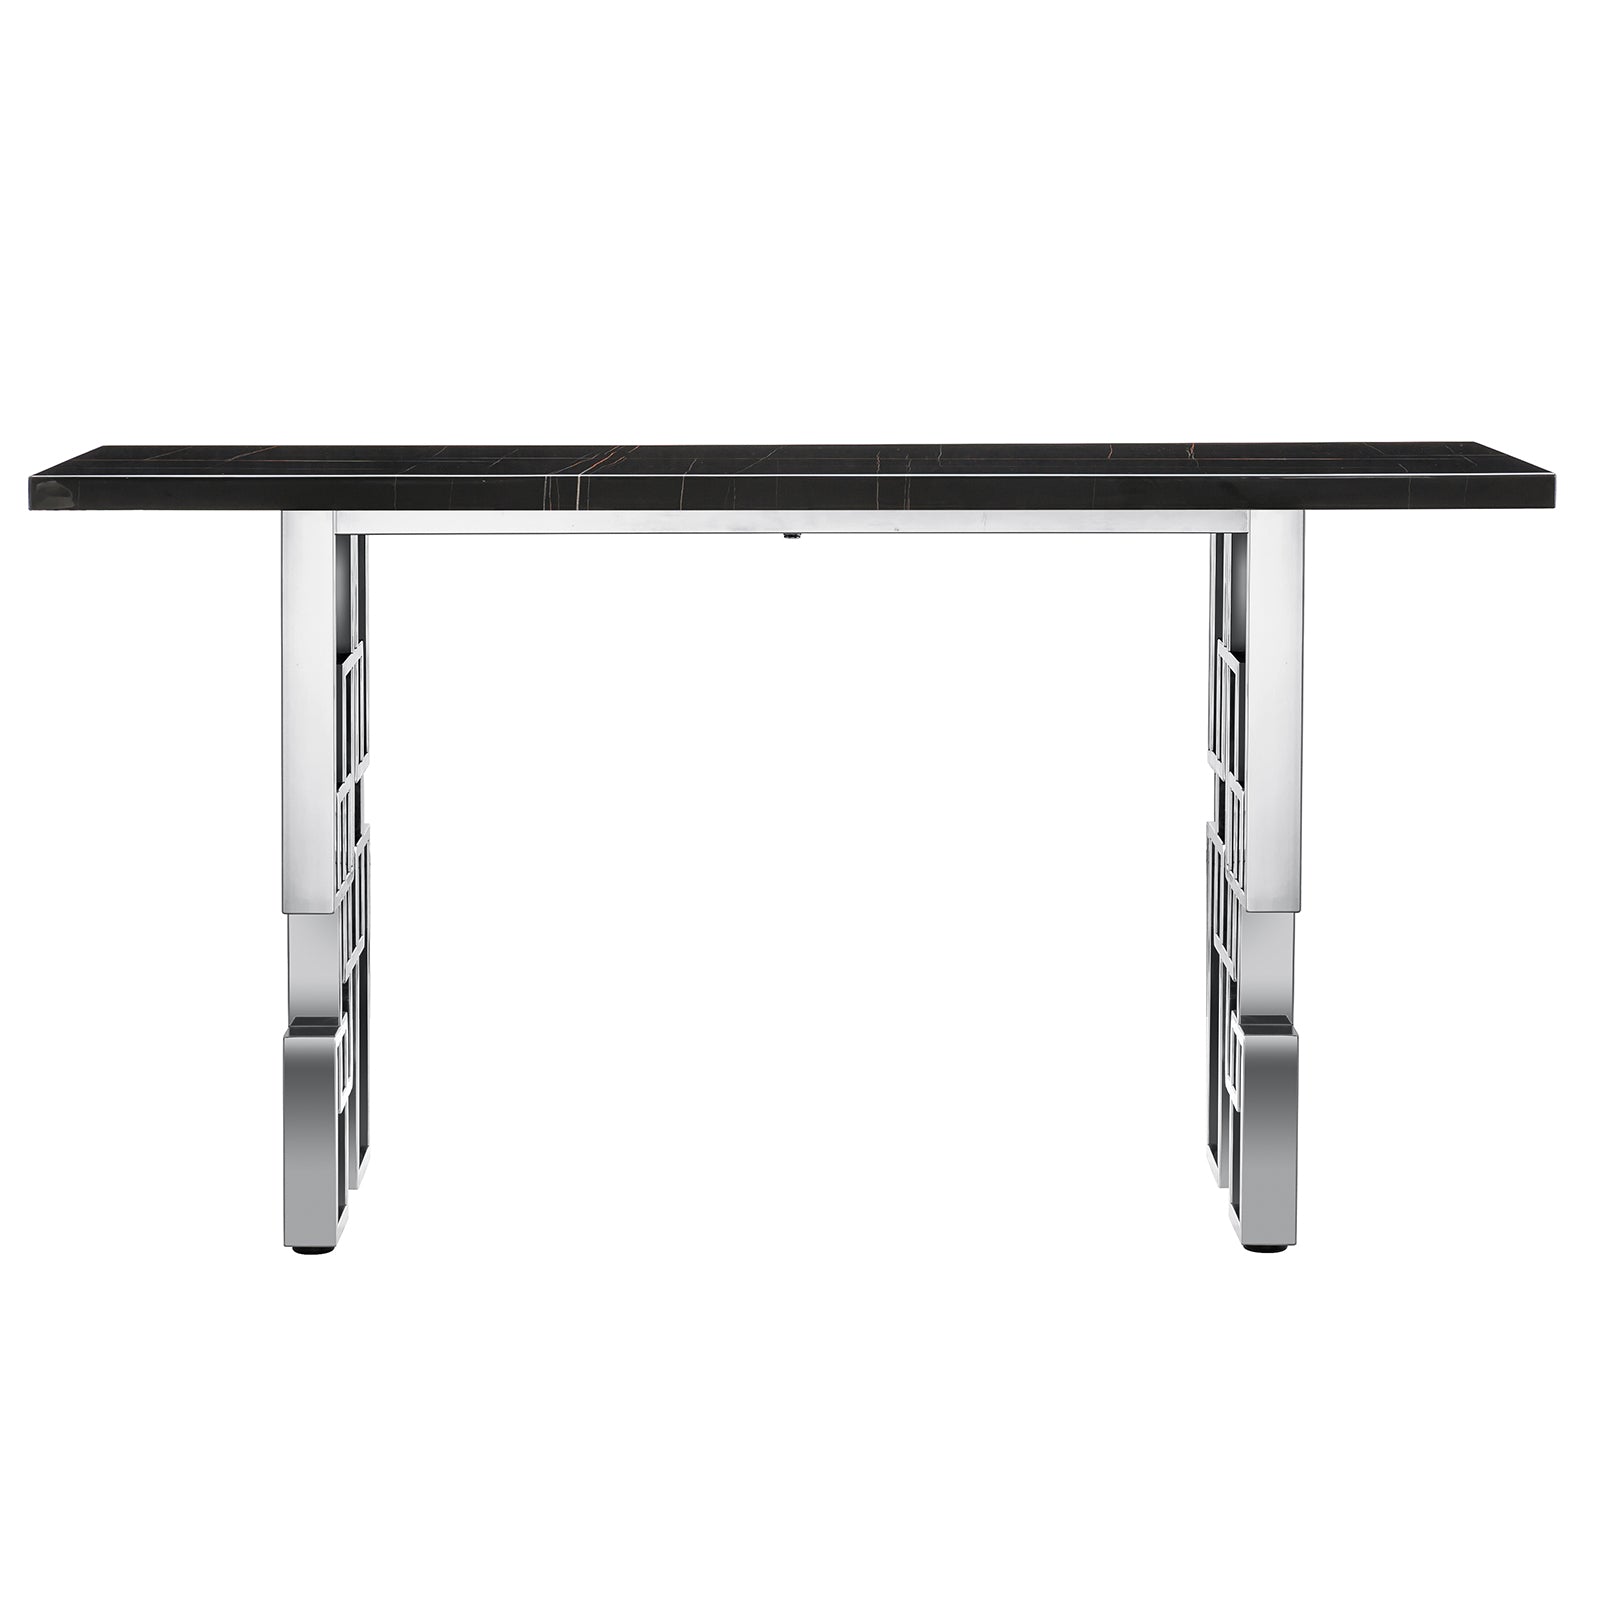 Black Silver Living room table Set | MetalGeometric Base | L218